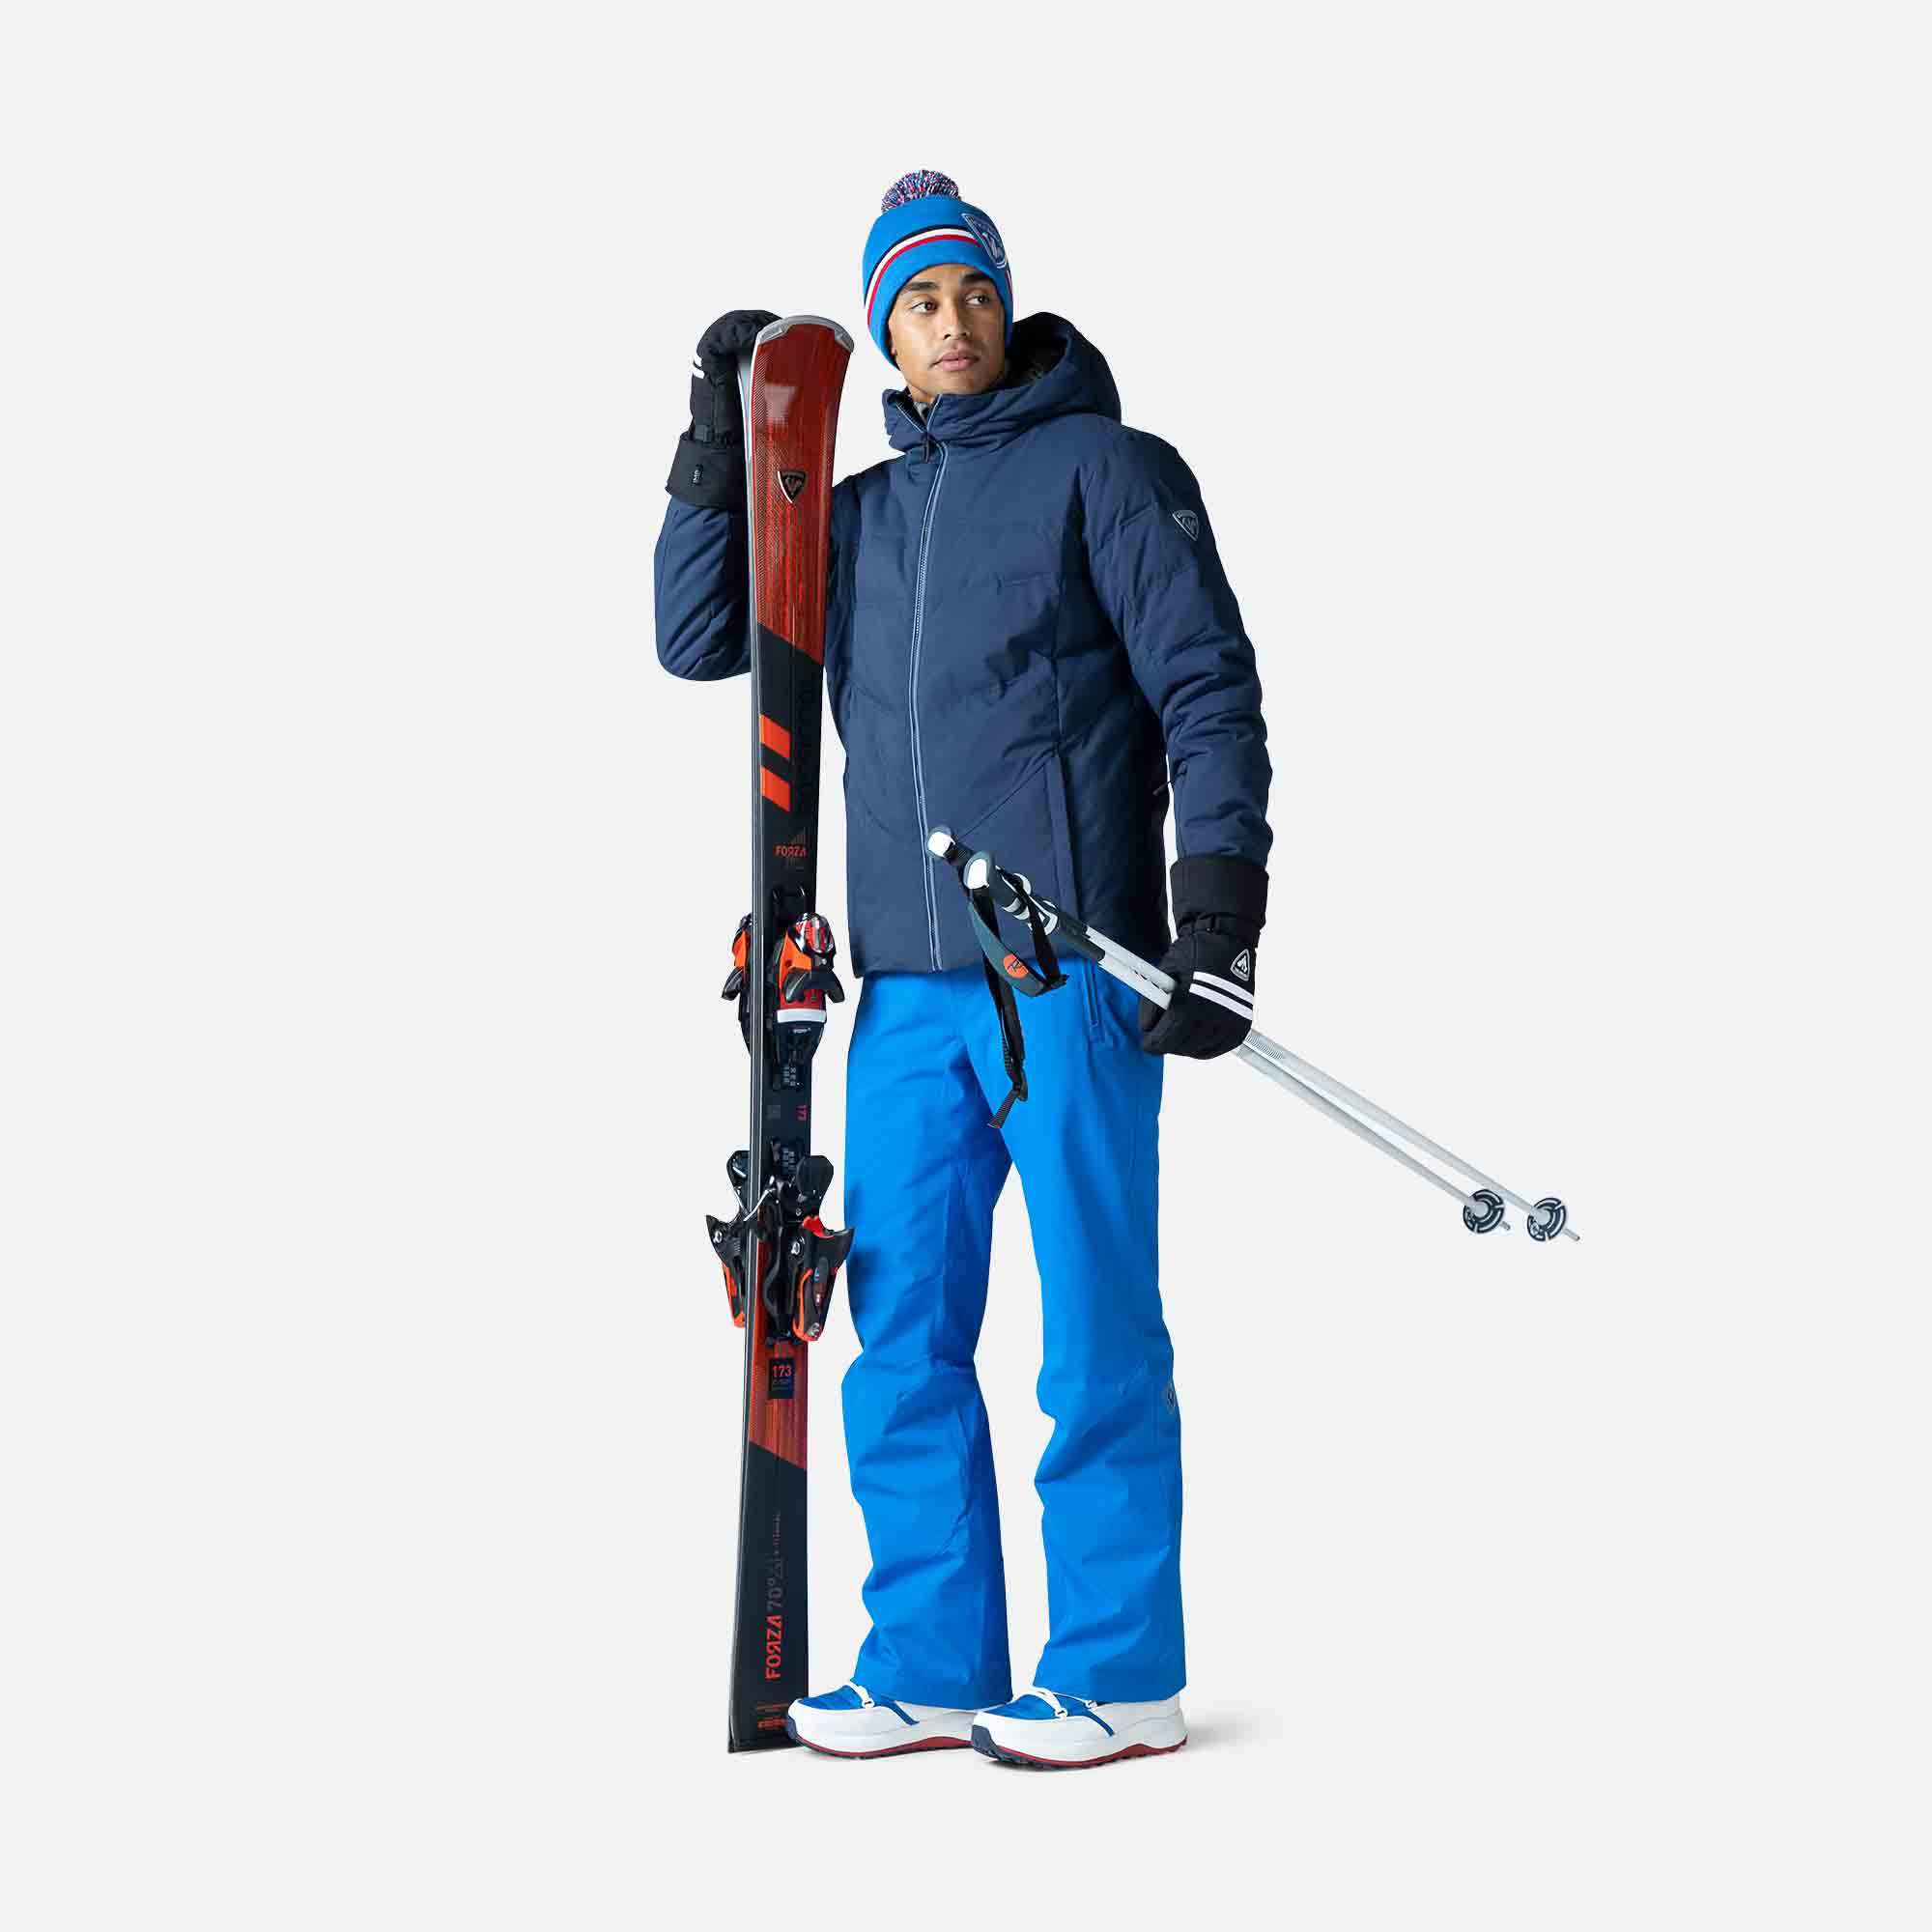 Veste ski homme Rossignol Surfusion Jacket dark navy 2020 Chez SportAixTrem